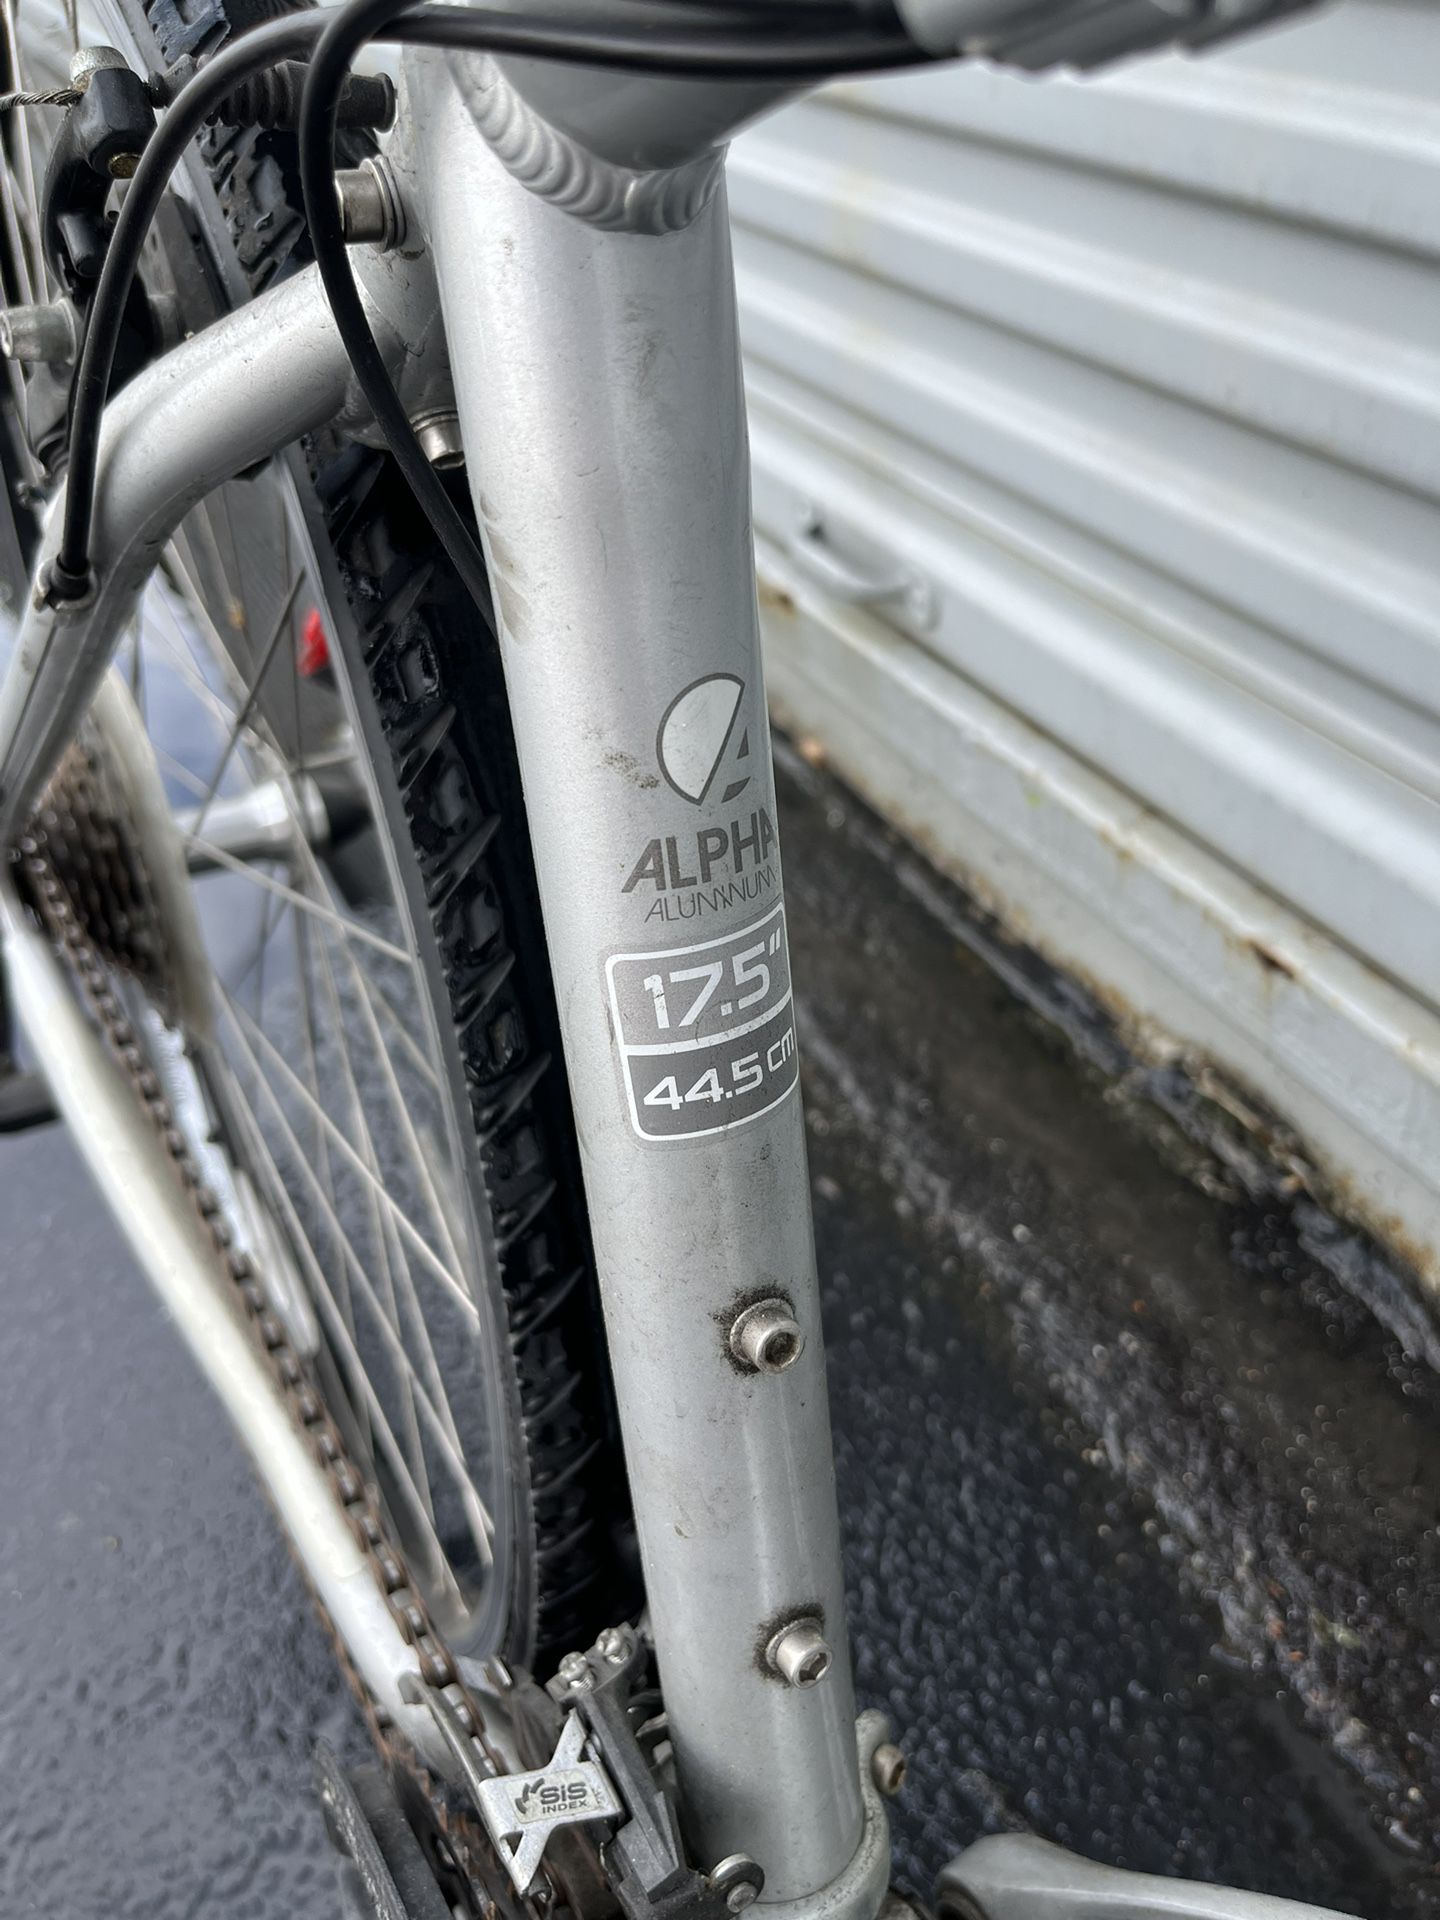 Trek 7000 Hybrid Bicycle